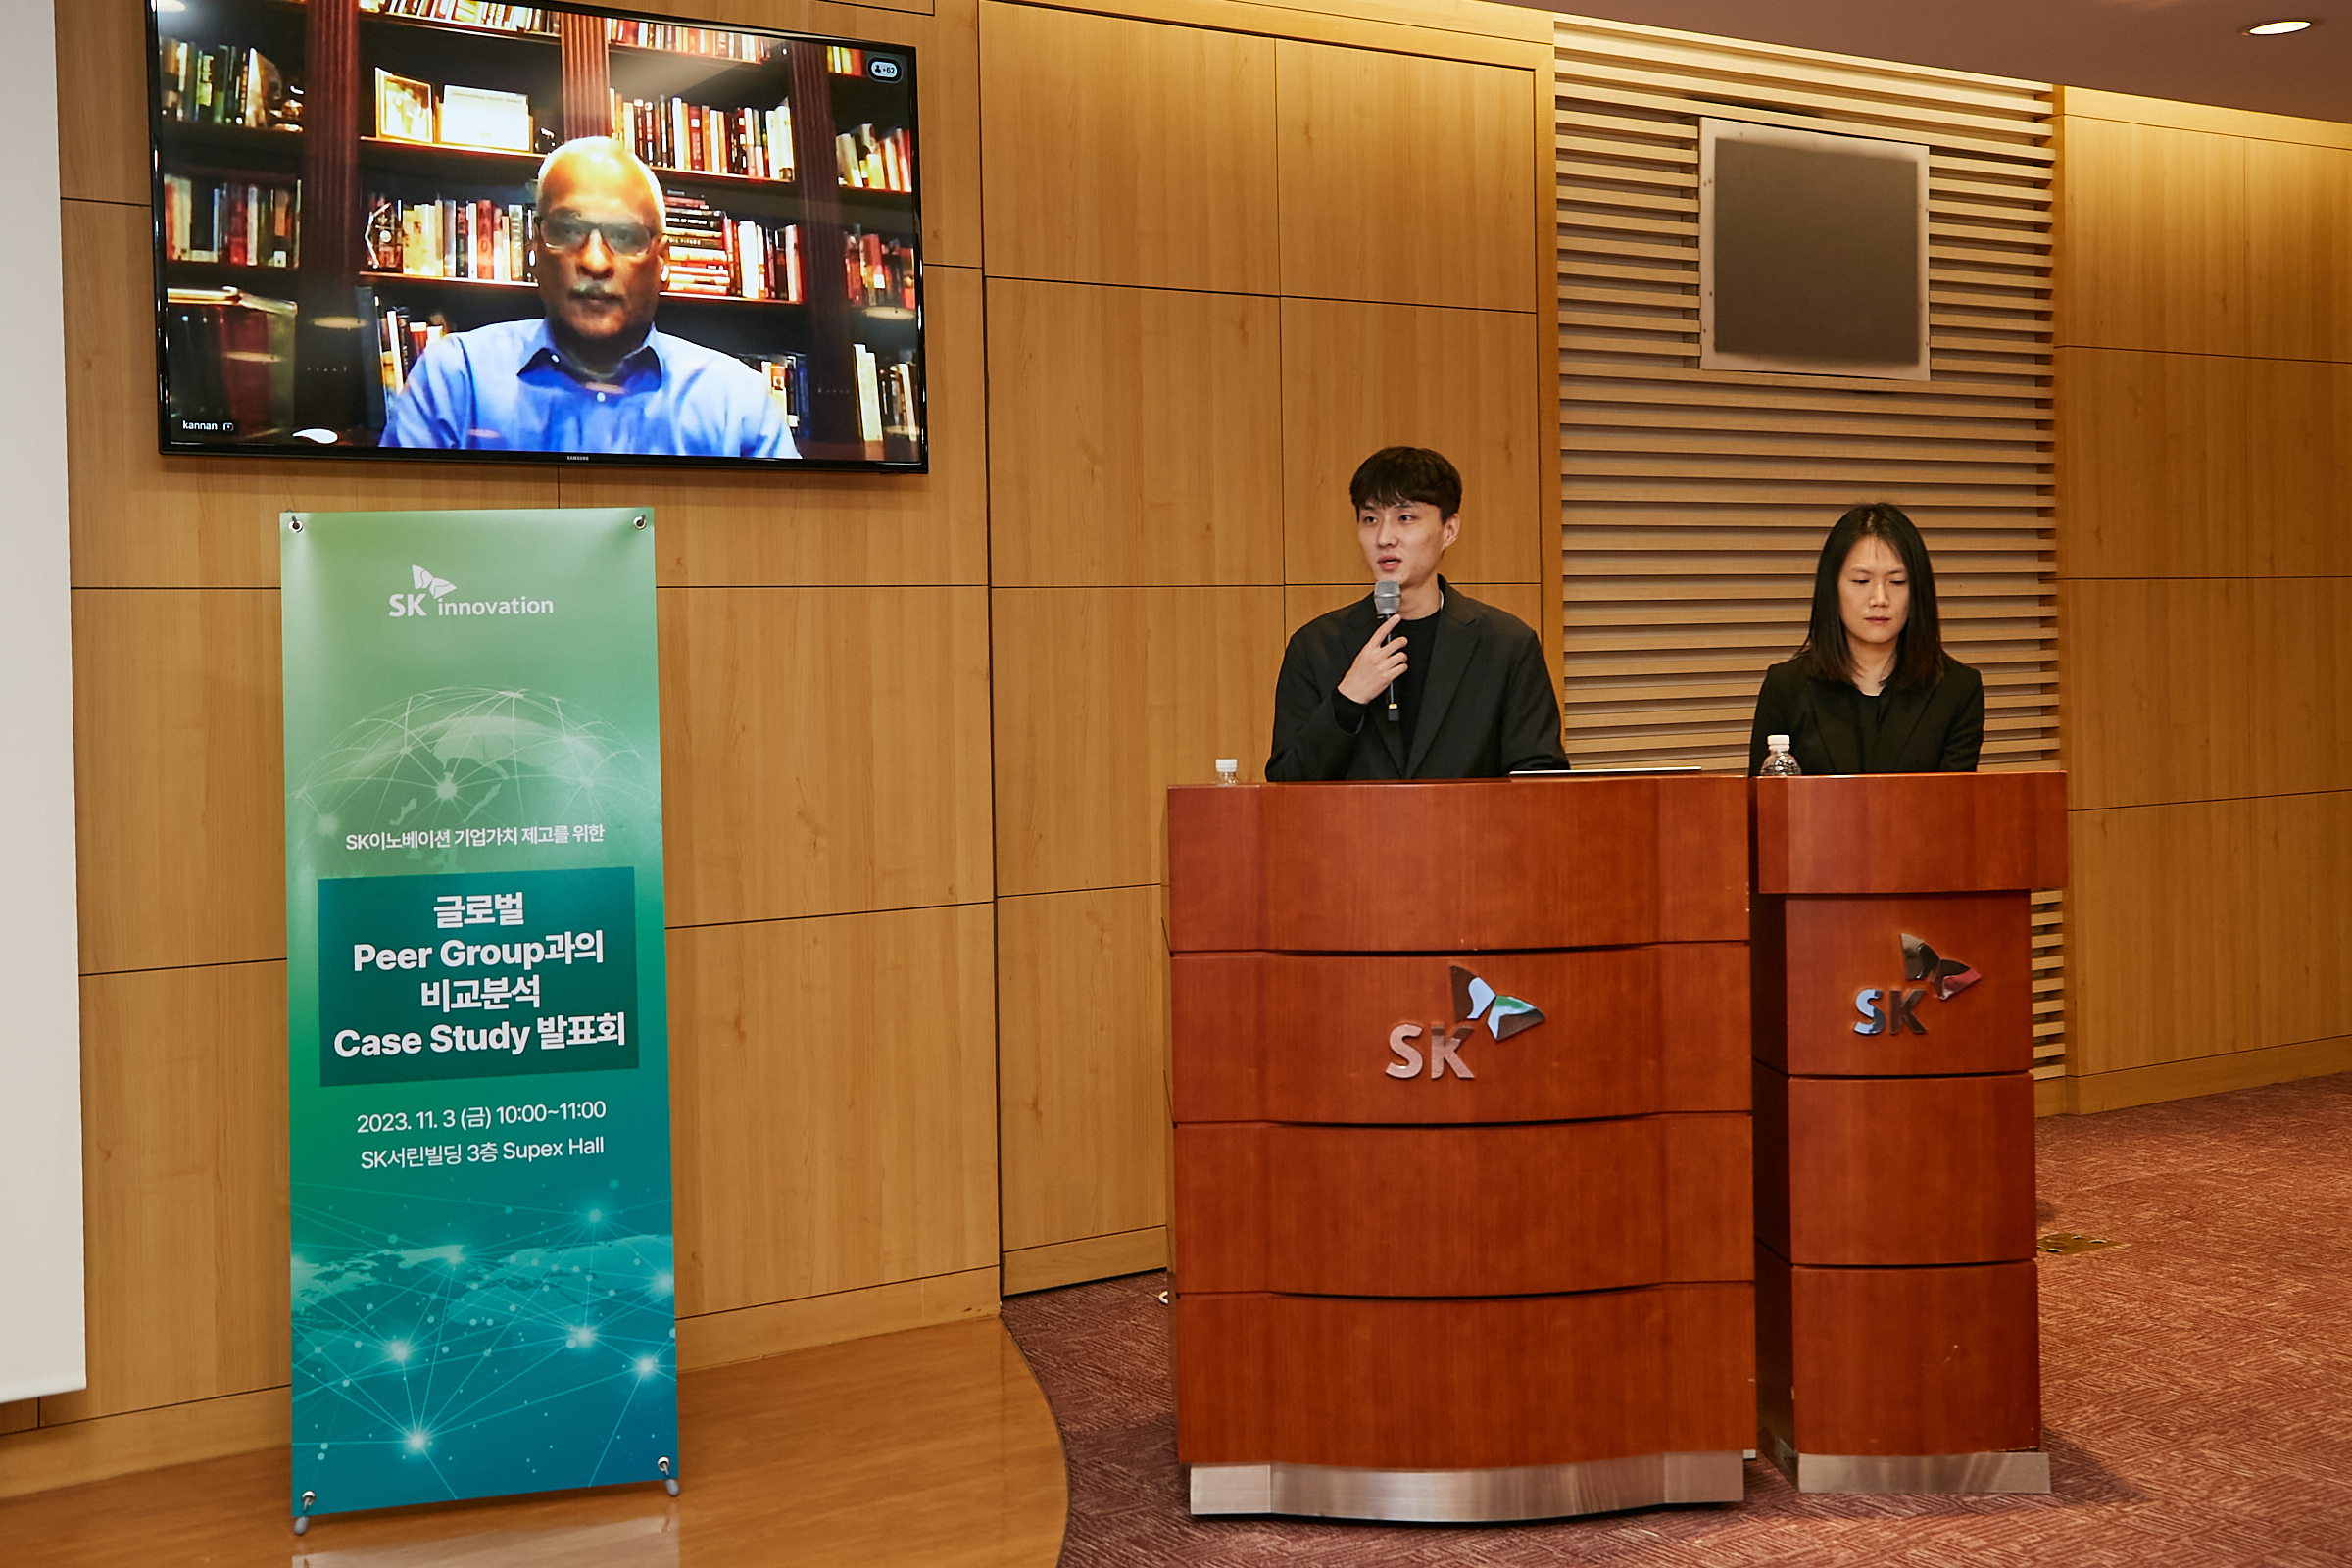 카난 라마스와미 미국 애리조나대 교수(왼쪽)가 3일 서울 종로구 SK서린빌딩에서 열린 ‘글로벌 동종 그룹과의 비교분석 케이스스터디’에서 영상 발표를 하고 있다. SK이노베이션 제공